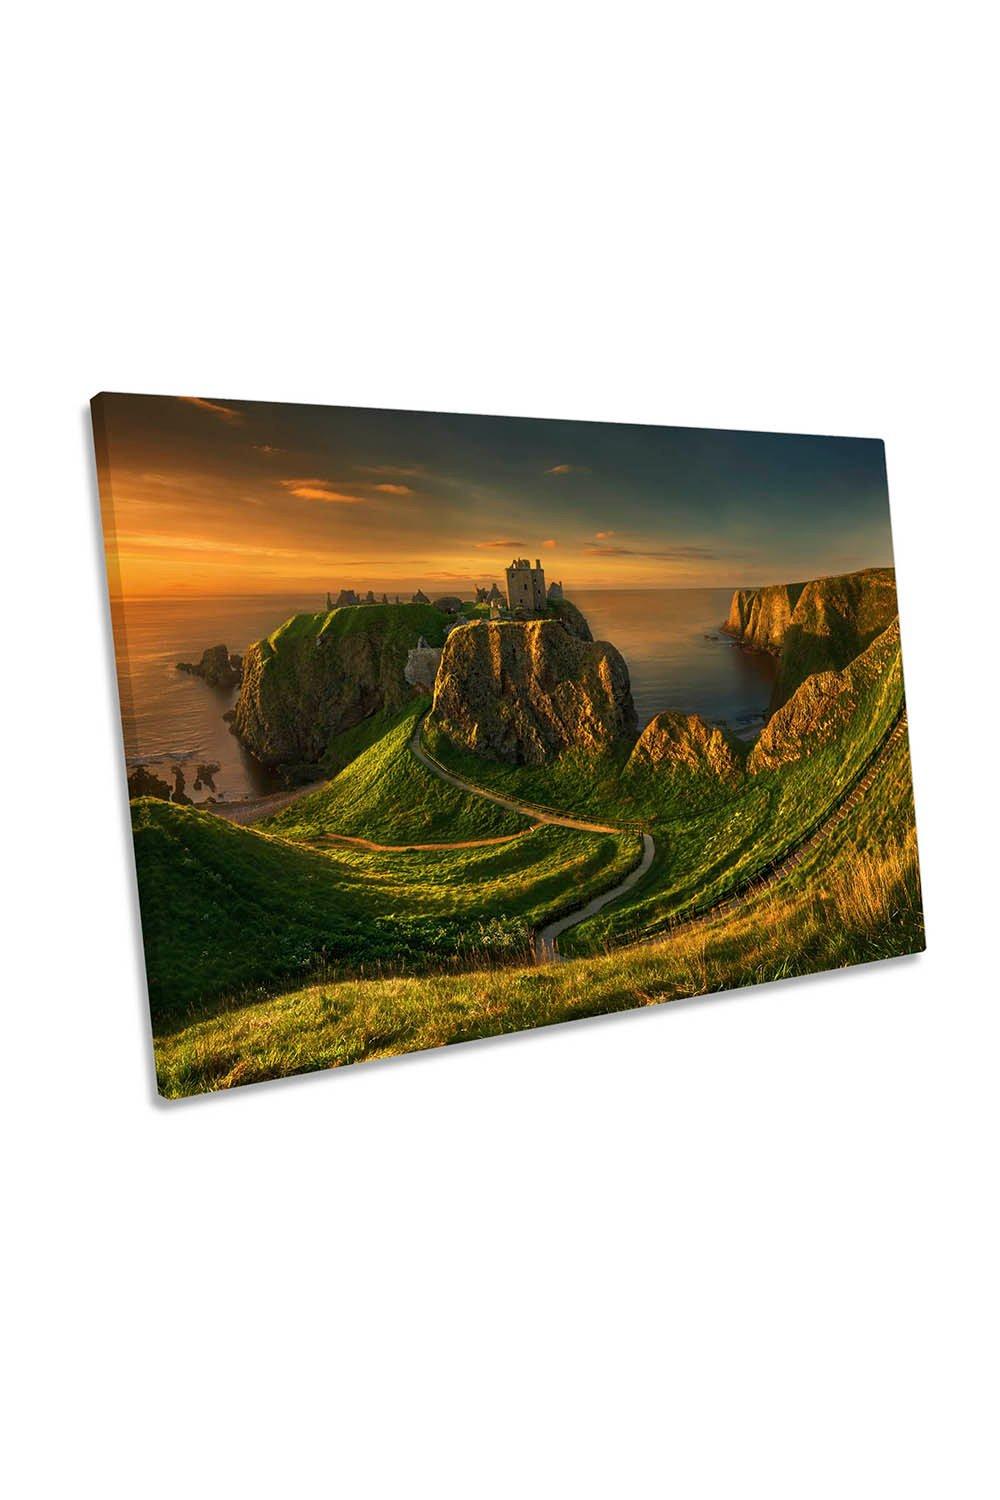 Dunnottar Castle Scotland Sunset Canvas Wall Art Picture Print